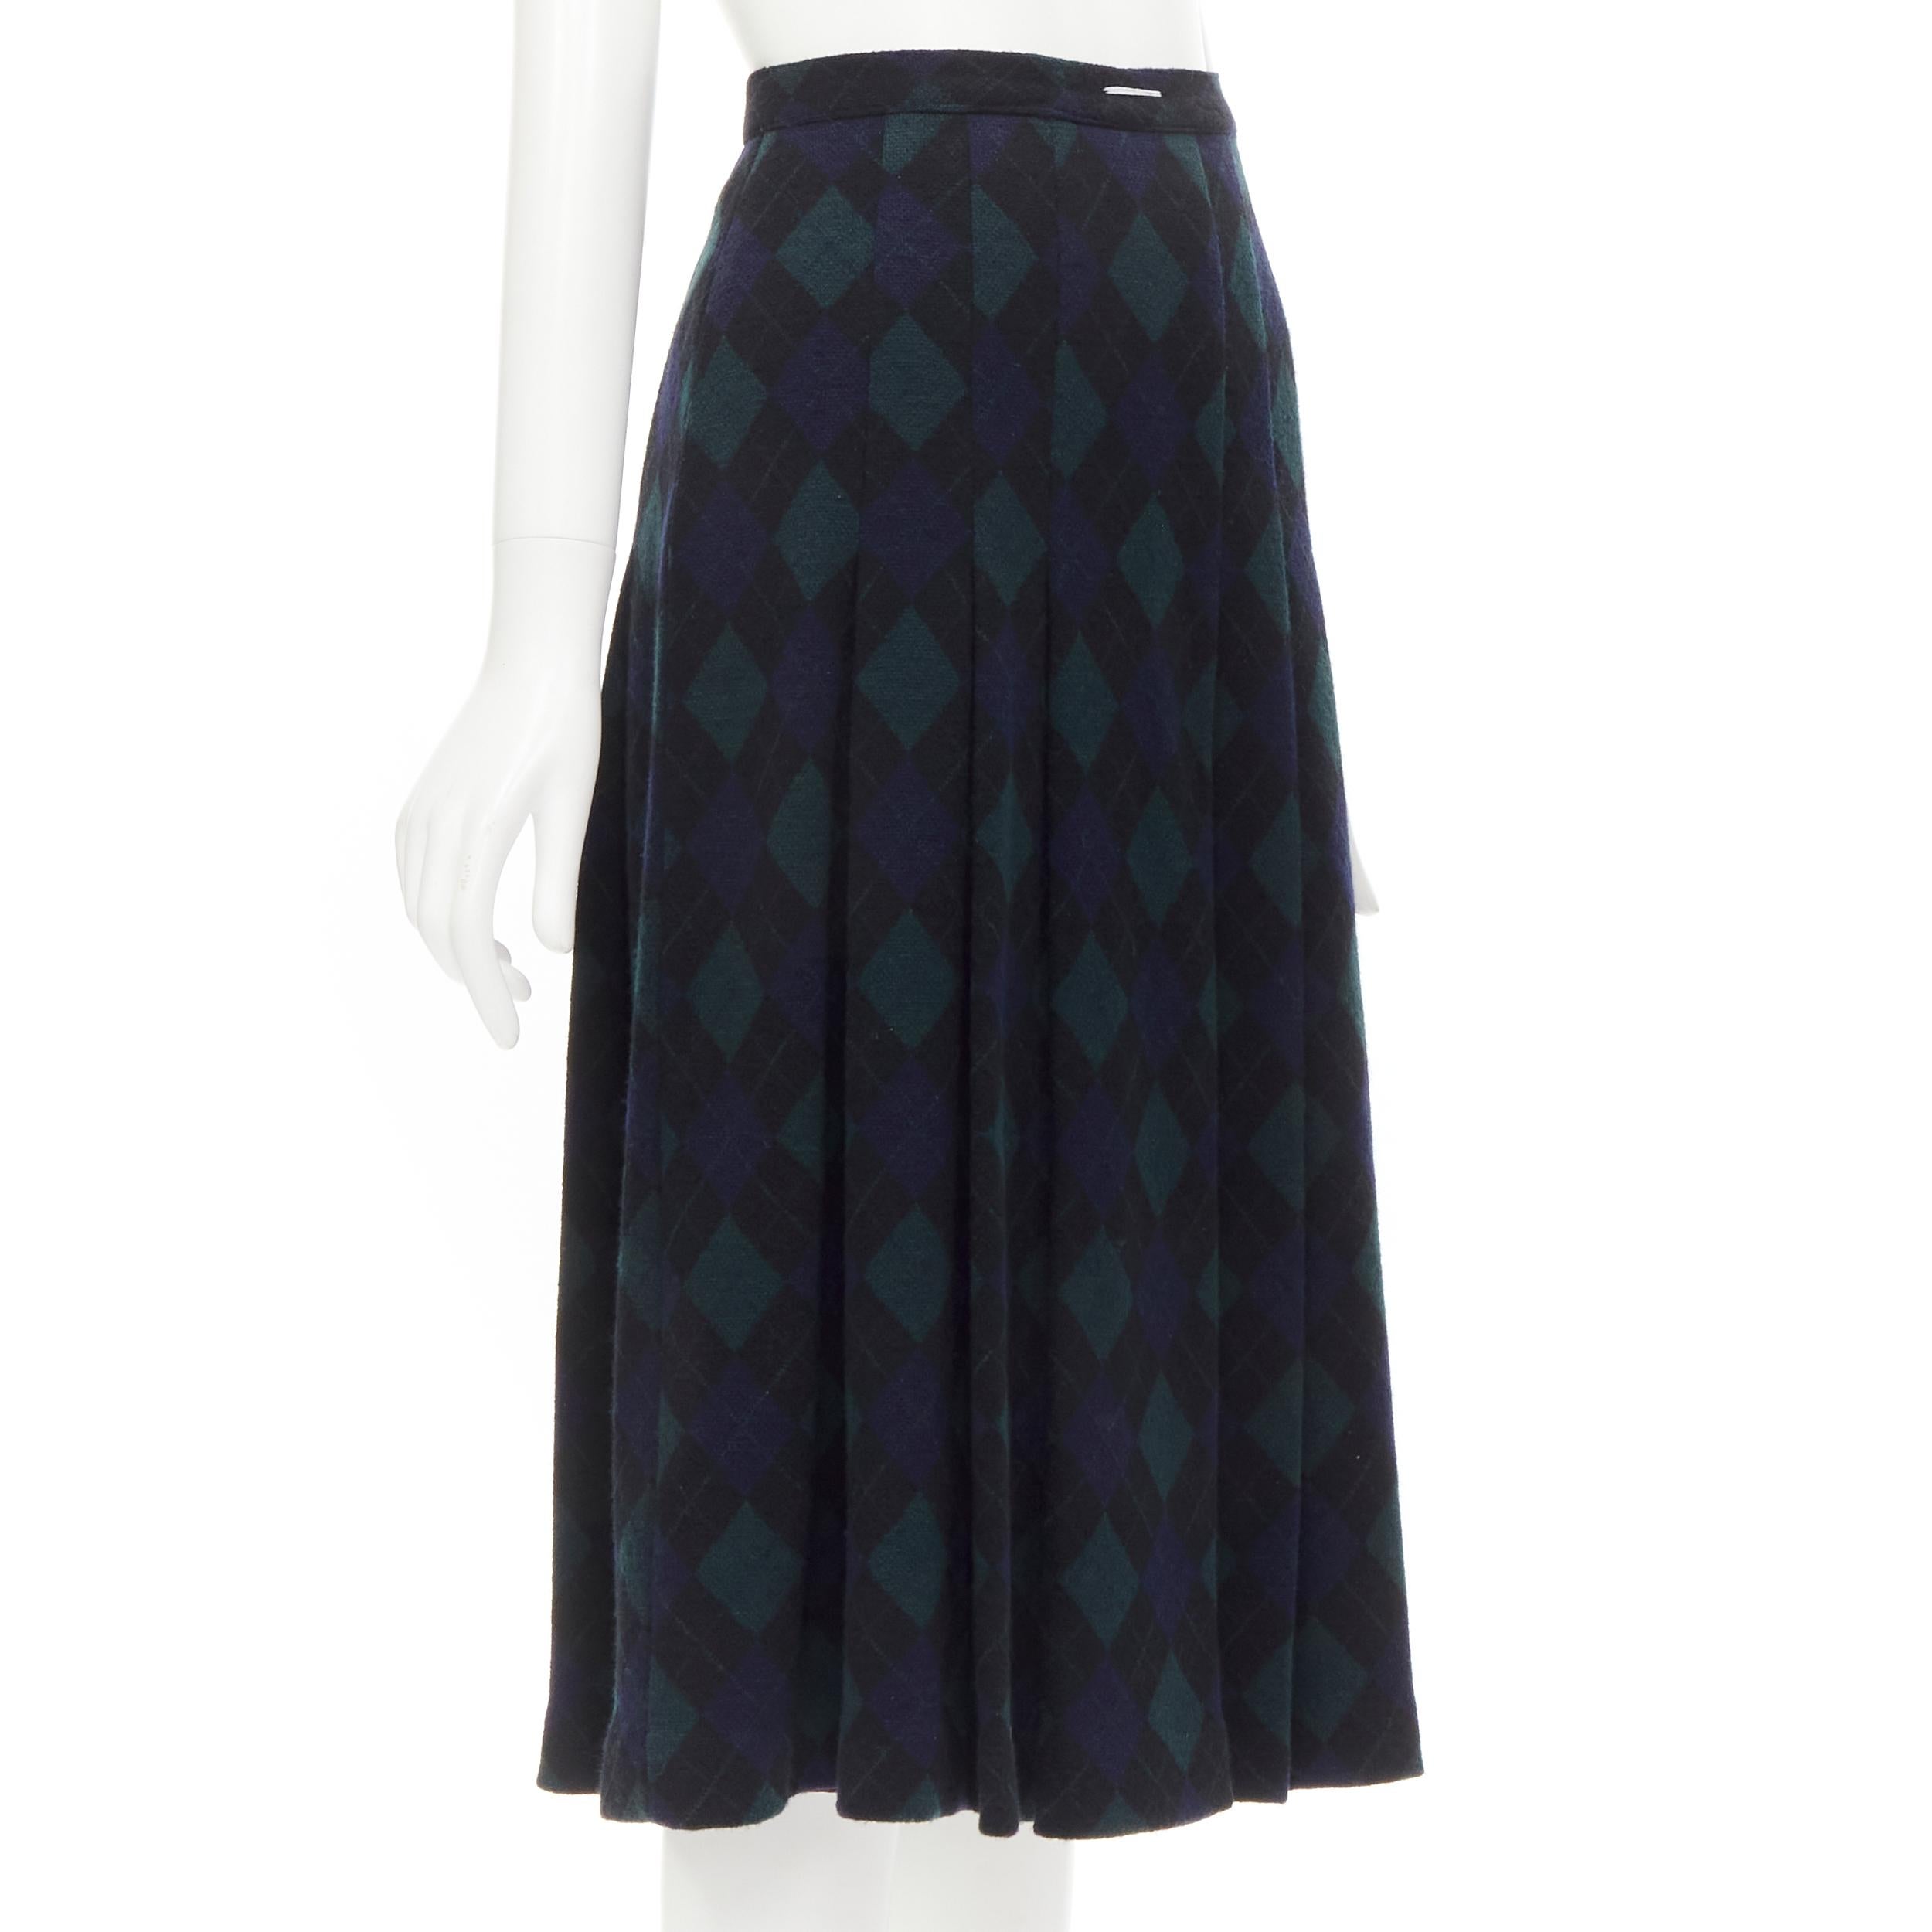 1970s midi skirt